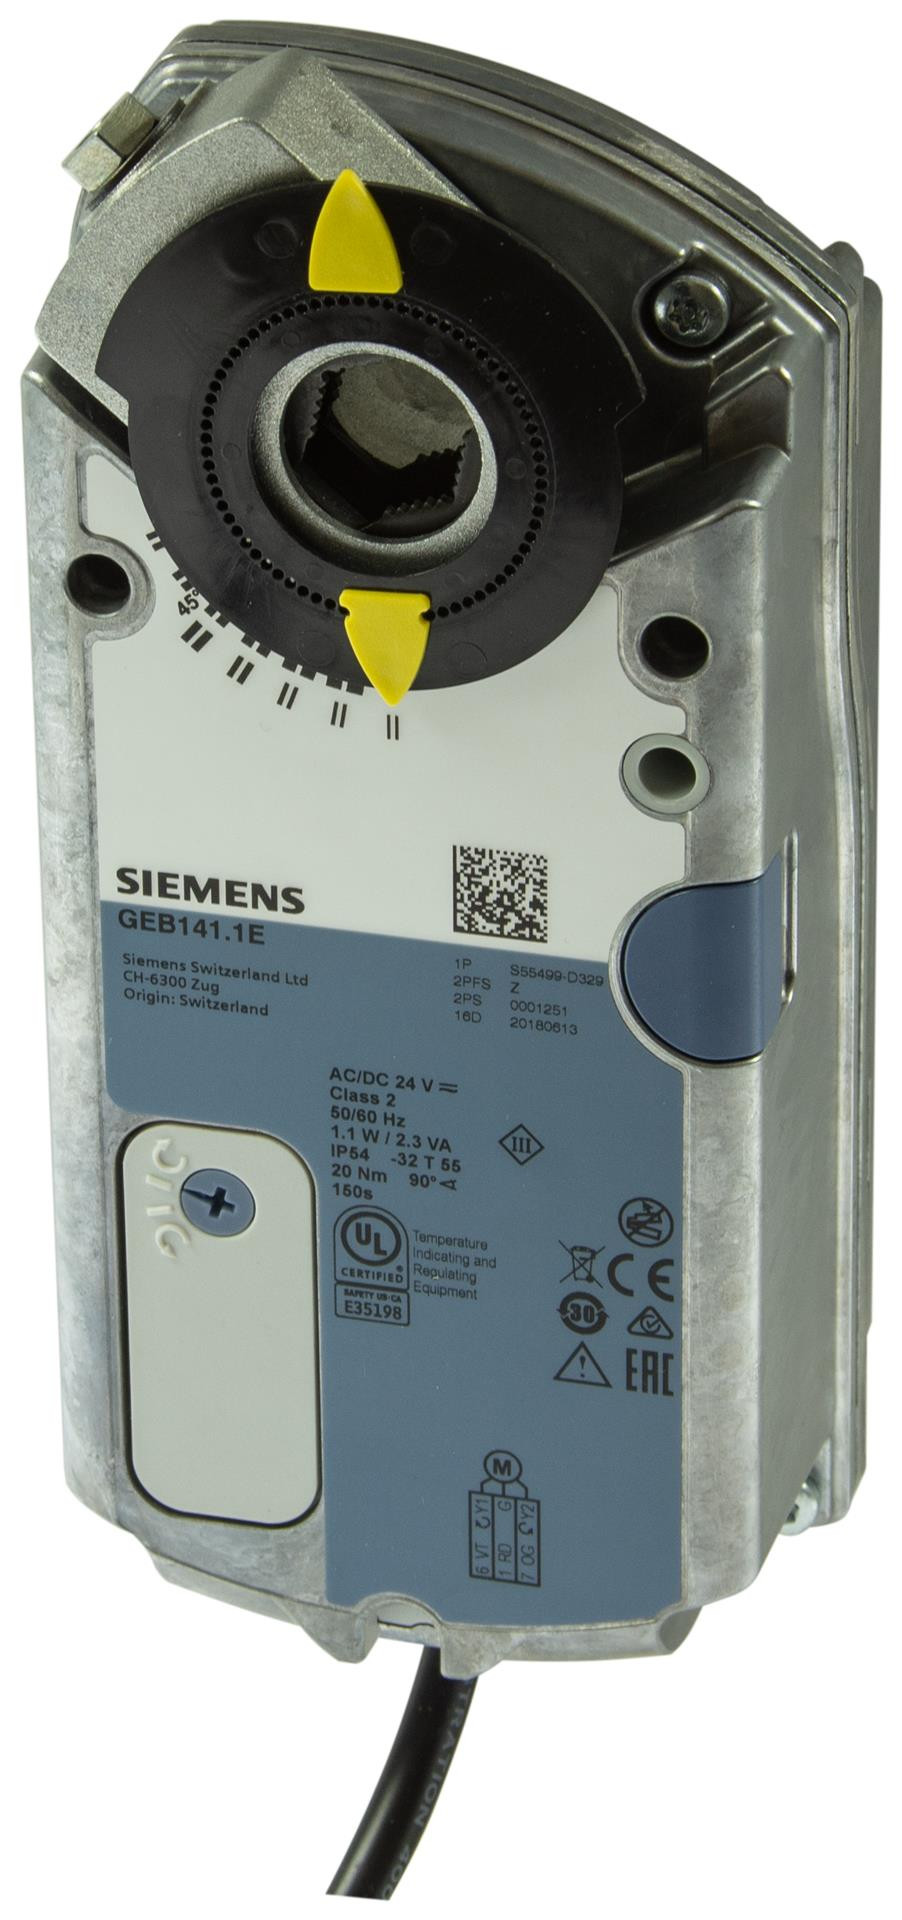 Siemens Luftklappen-Drehantriebe 20 Nm ohne Federrücklauf GEB141.1E